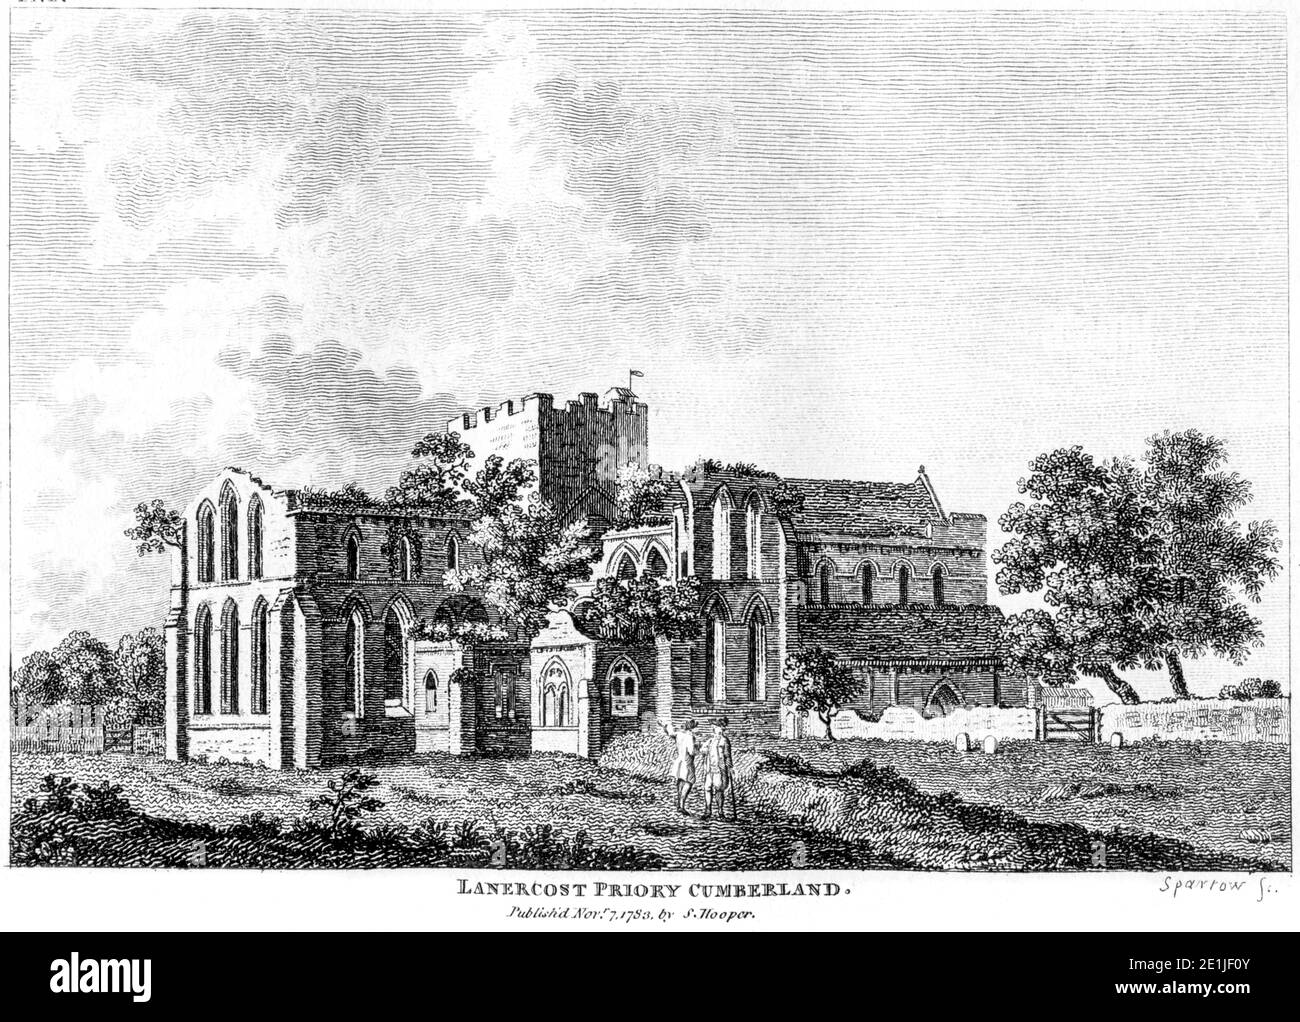 Ein Stich von Lanercost Priory Cumberland, veröffentlicht im November 7 1783, gescannt in hoher Auflösung von einem Buch, das im Jahr 1780s veröffentlicht wurde. Stockfoto